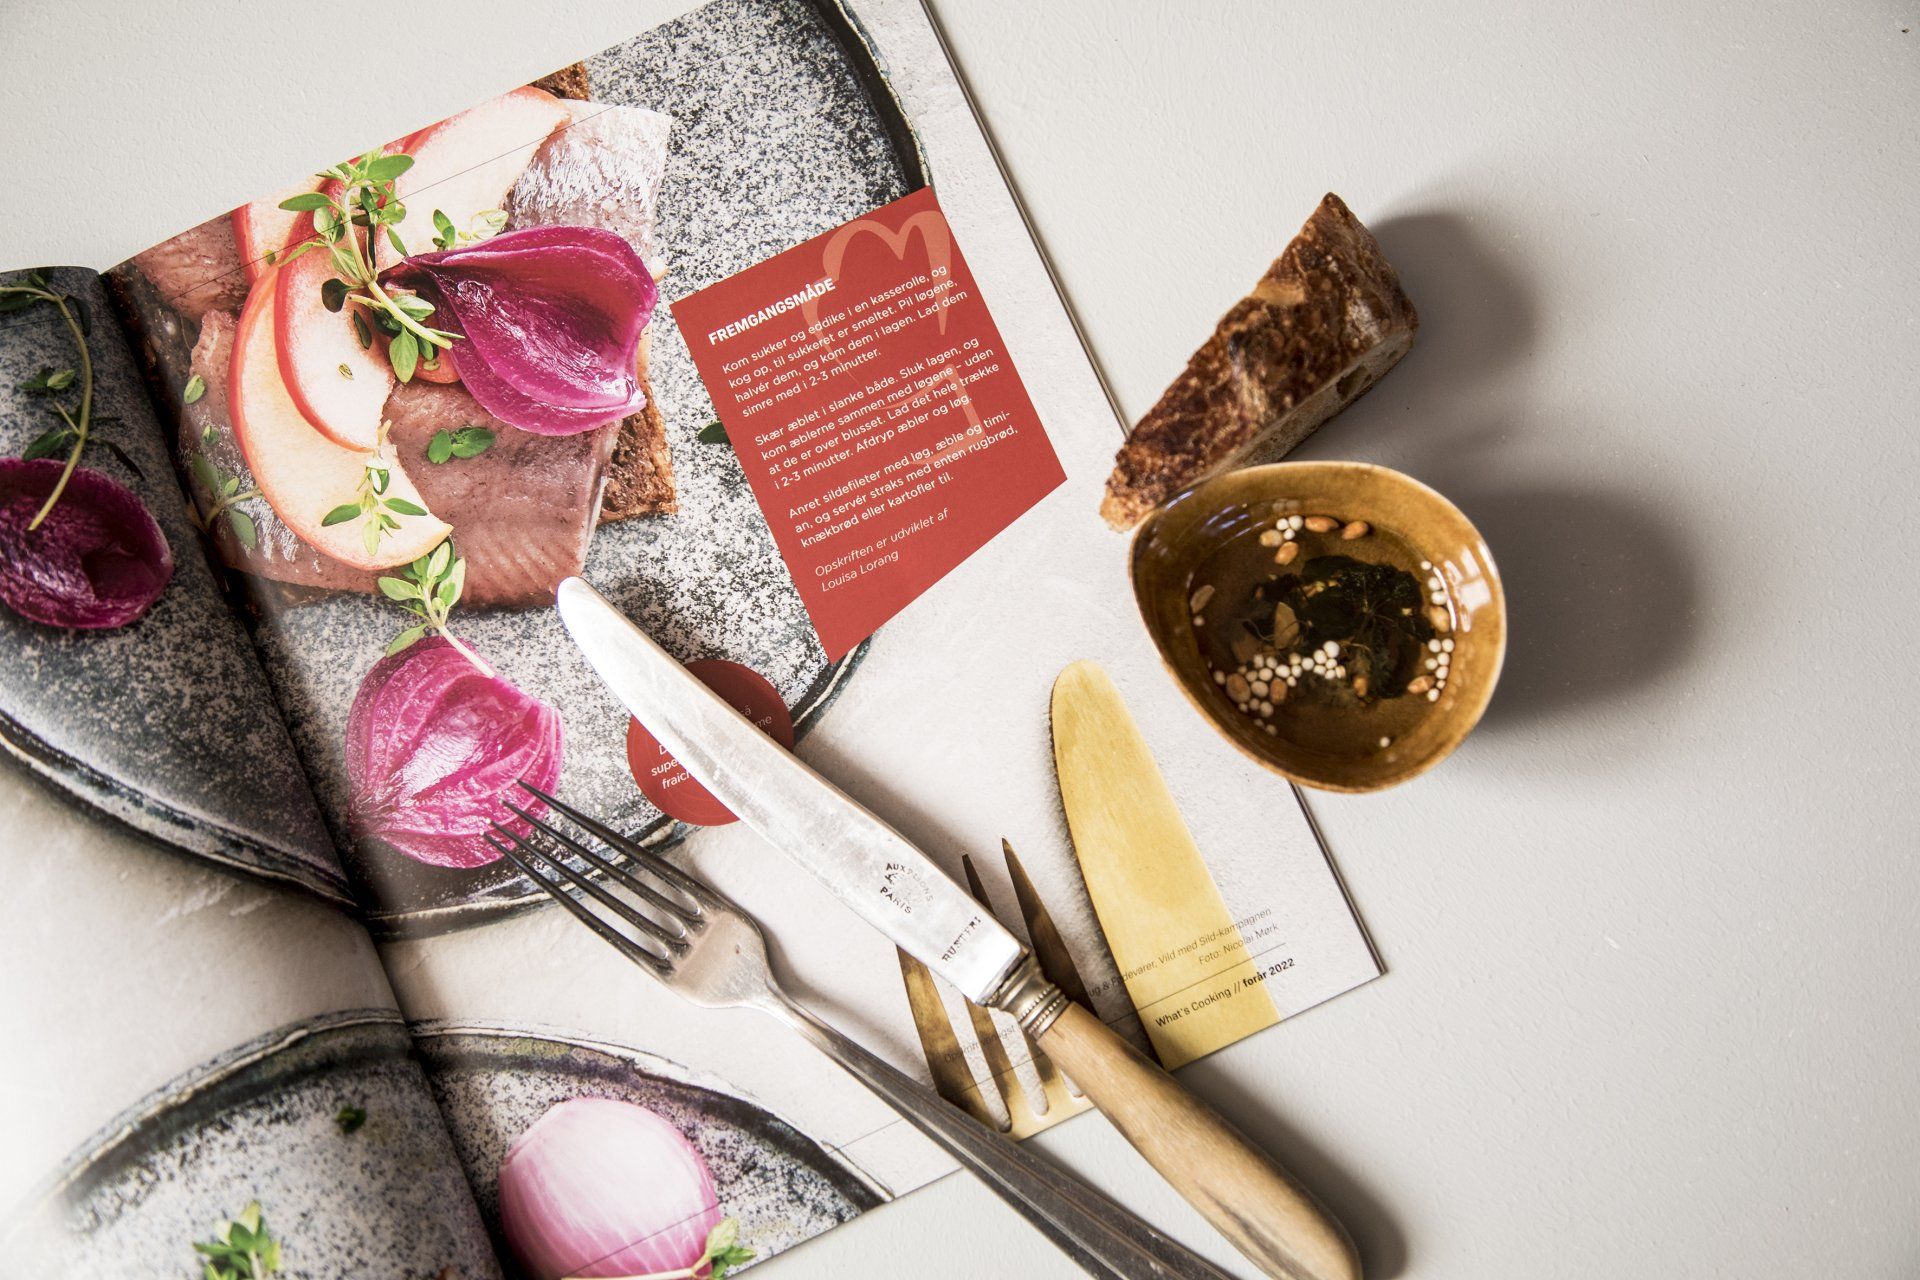 Et flot opslag i magasinet What's Cooking, der viser en sildemad. Der er også et rustikt bestiksæt samt en skive brød på billeder, der giver stemning til billedet.